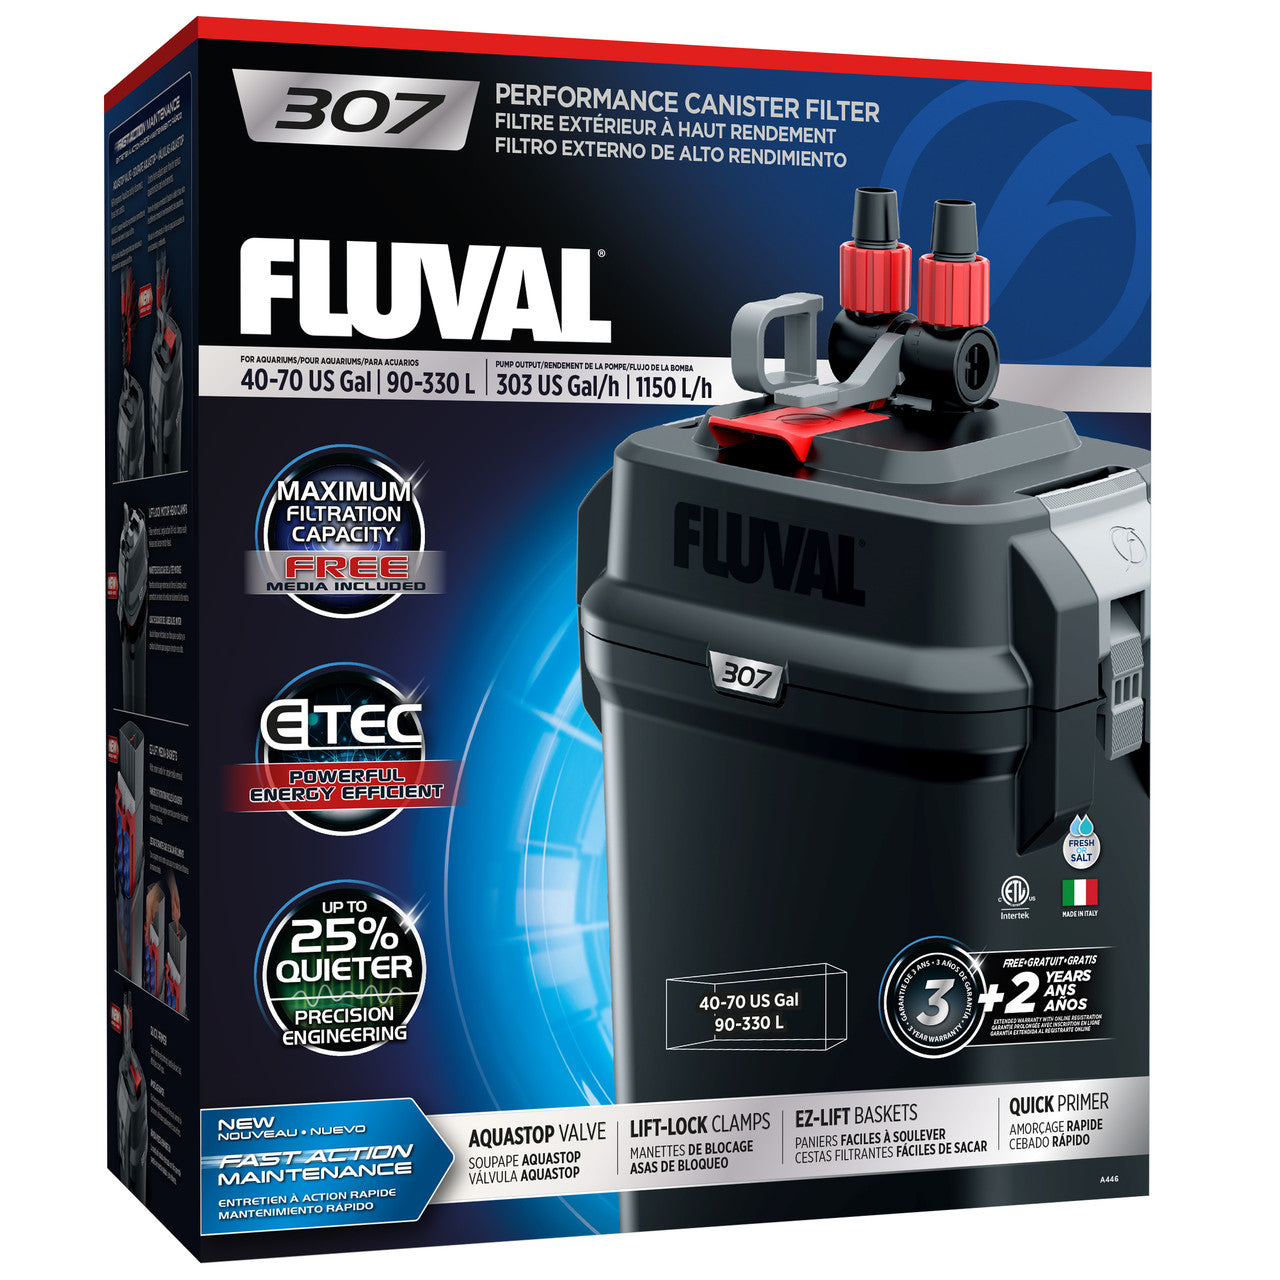 Fluval 307 External Filter 015561104463